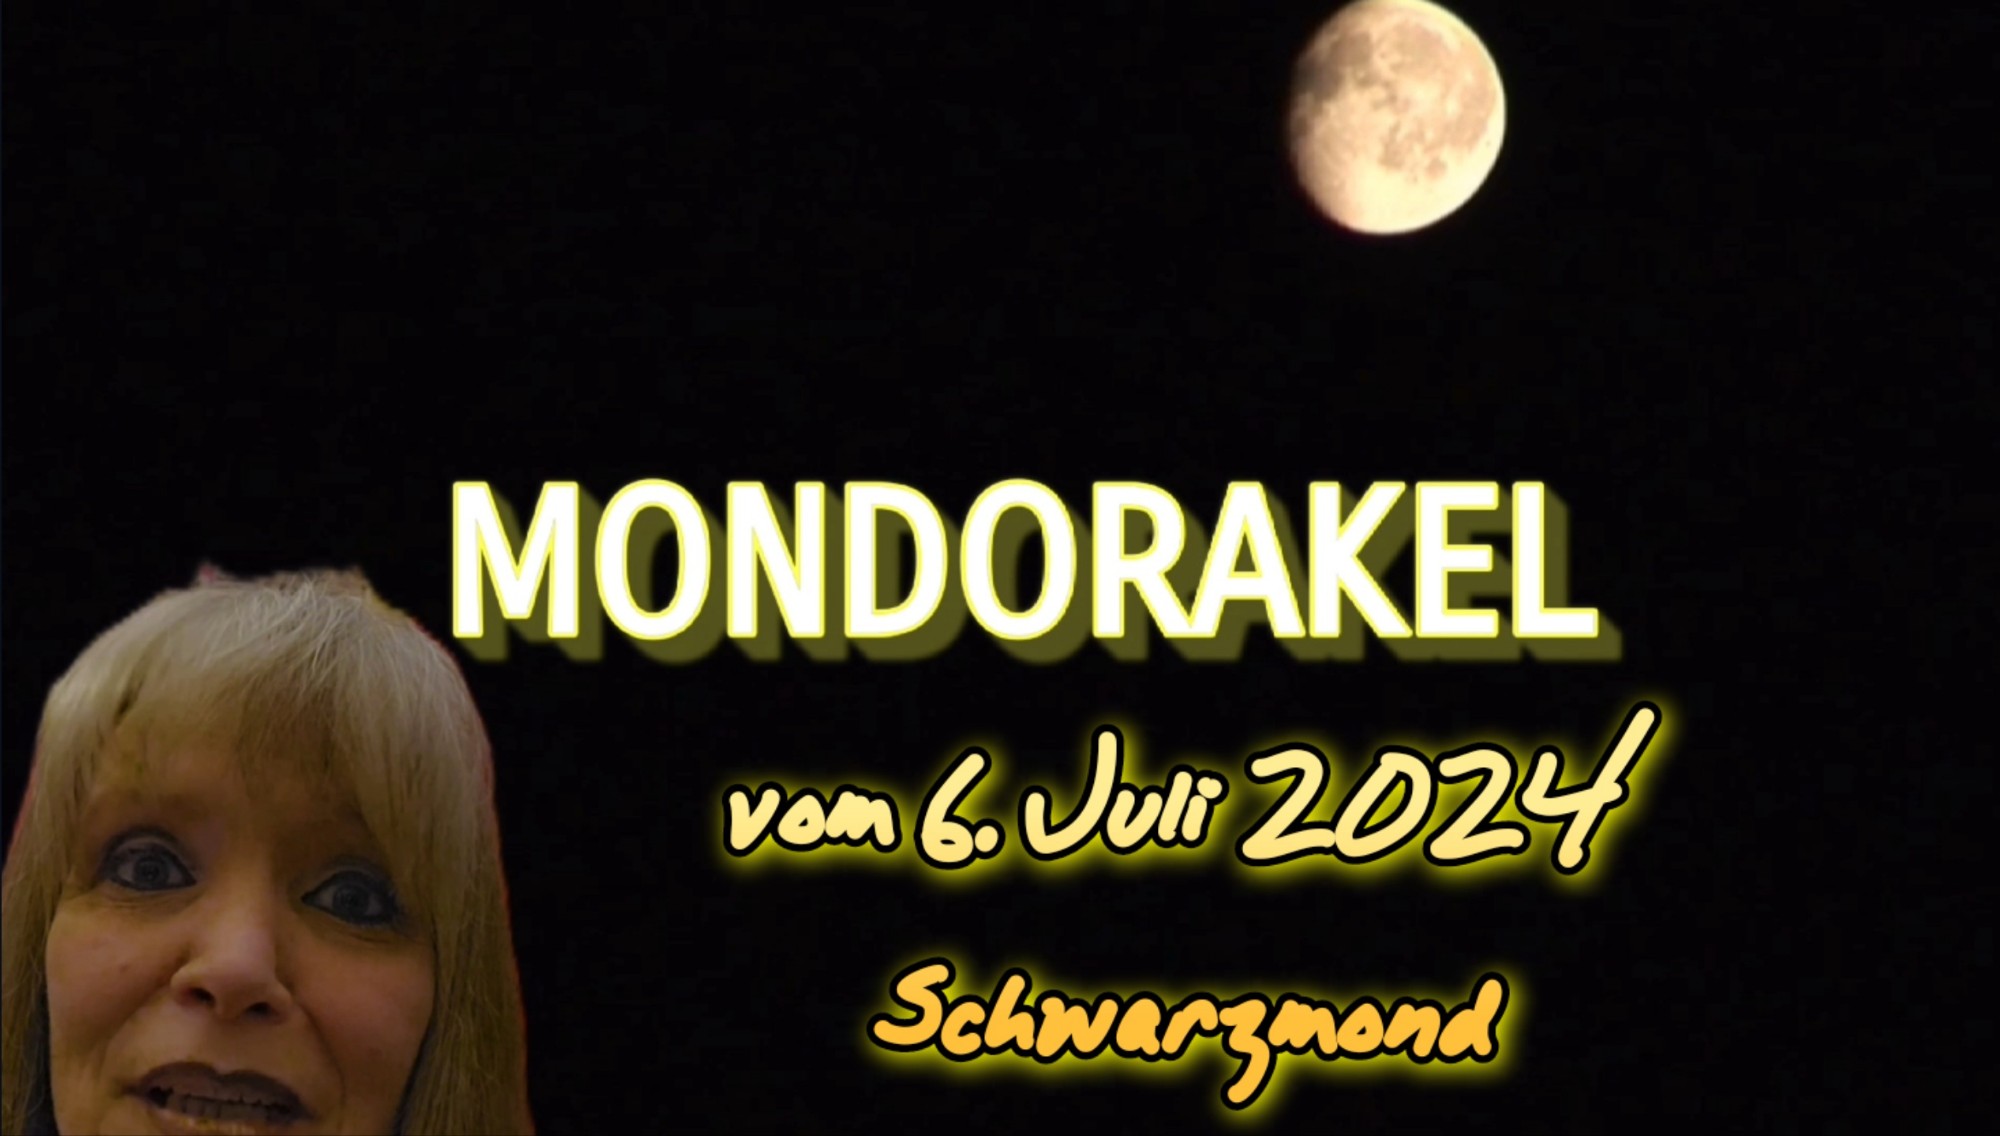 Kartenlegen, Mondorakel, Schwarzmond, Wanderhexe, Orakel